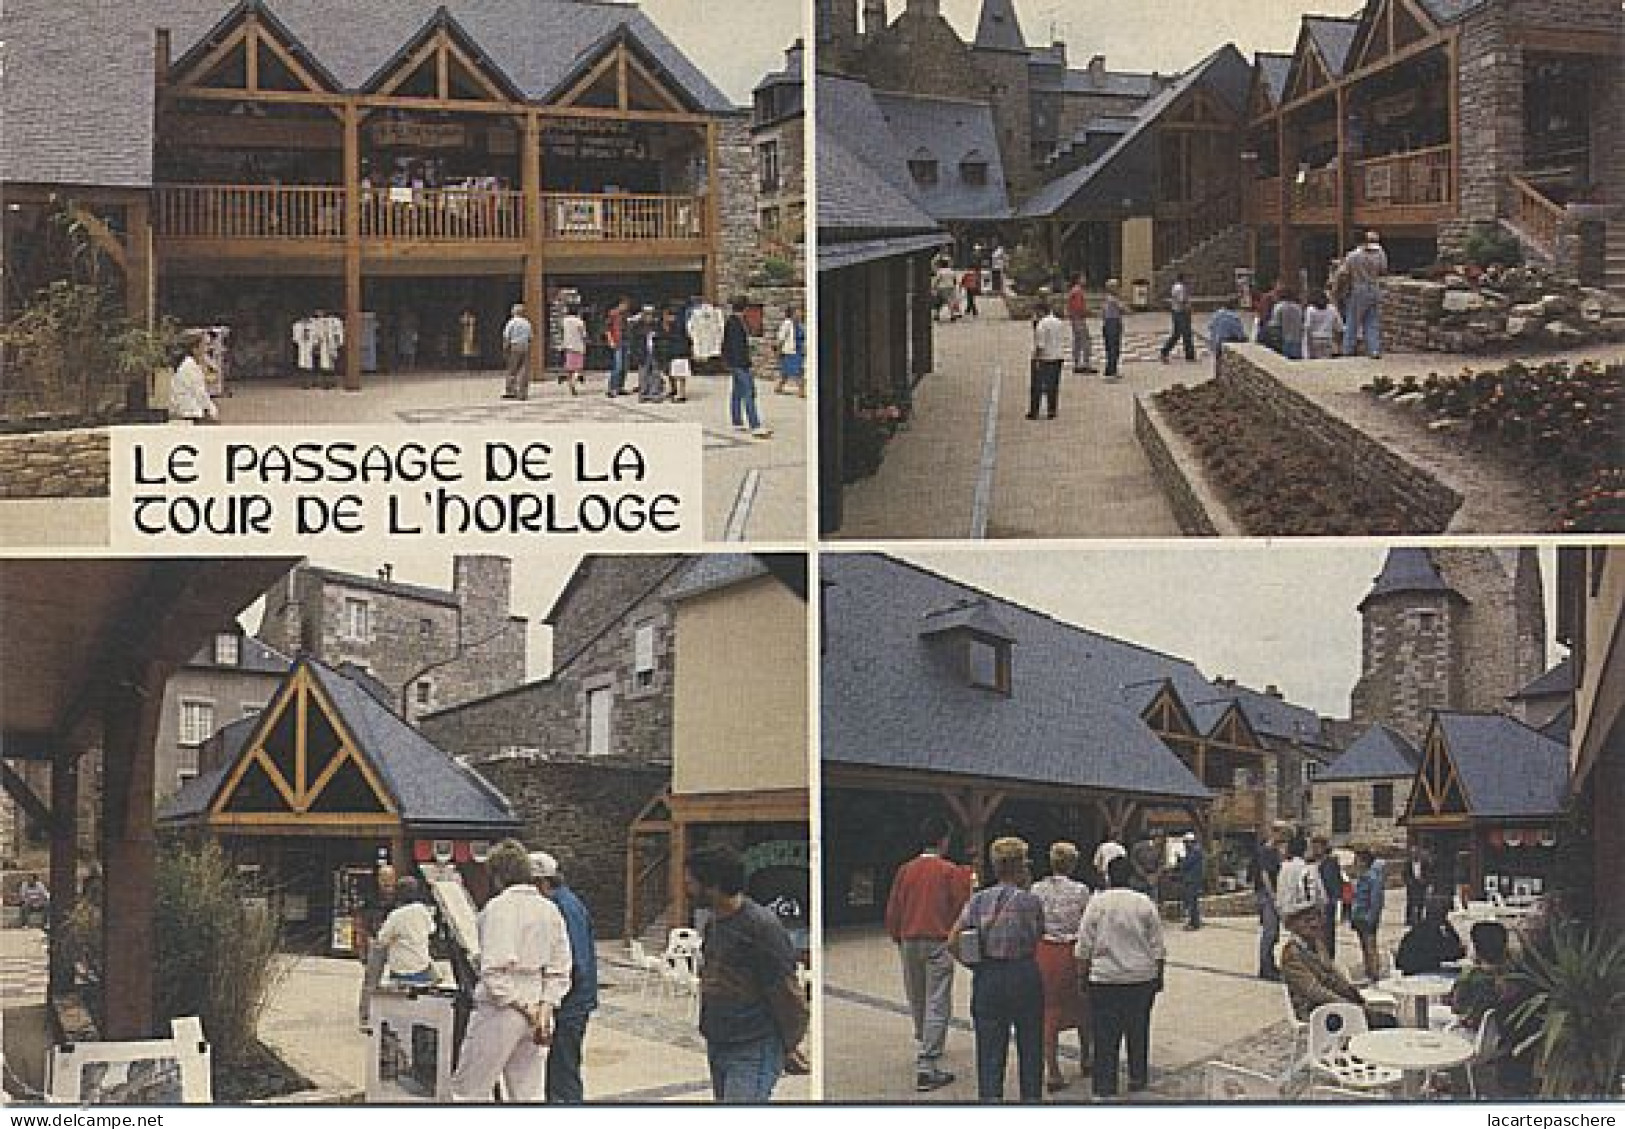 X10913 DINAN PASSAGE TOUR DE L' HORLOGE ET NOUVEAUX COMMERCES EN 1987 COTES D ARMOR - Dinan